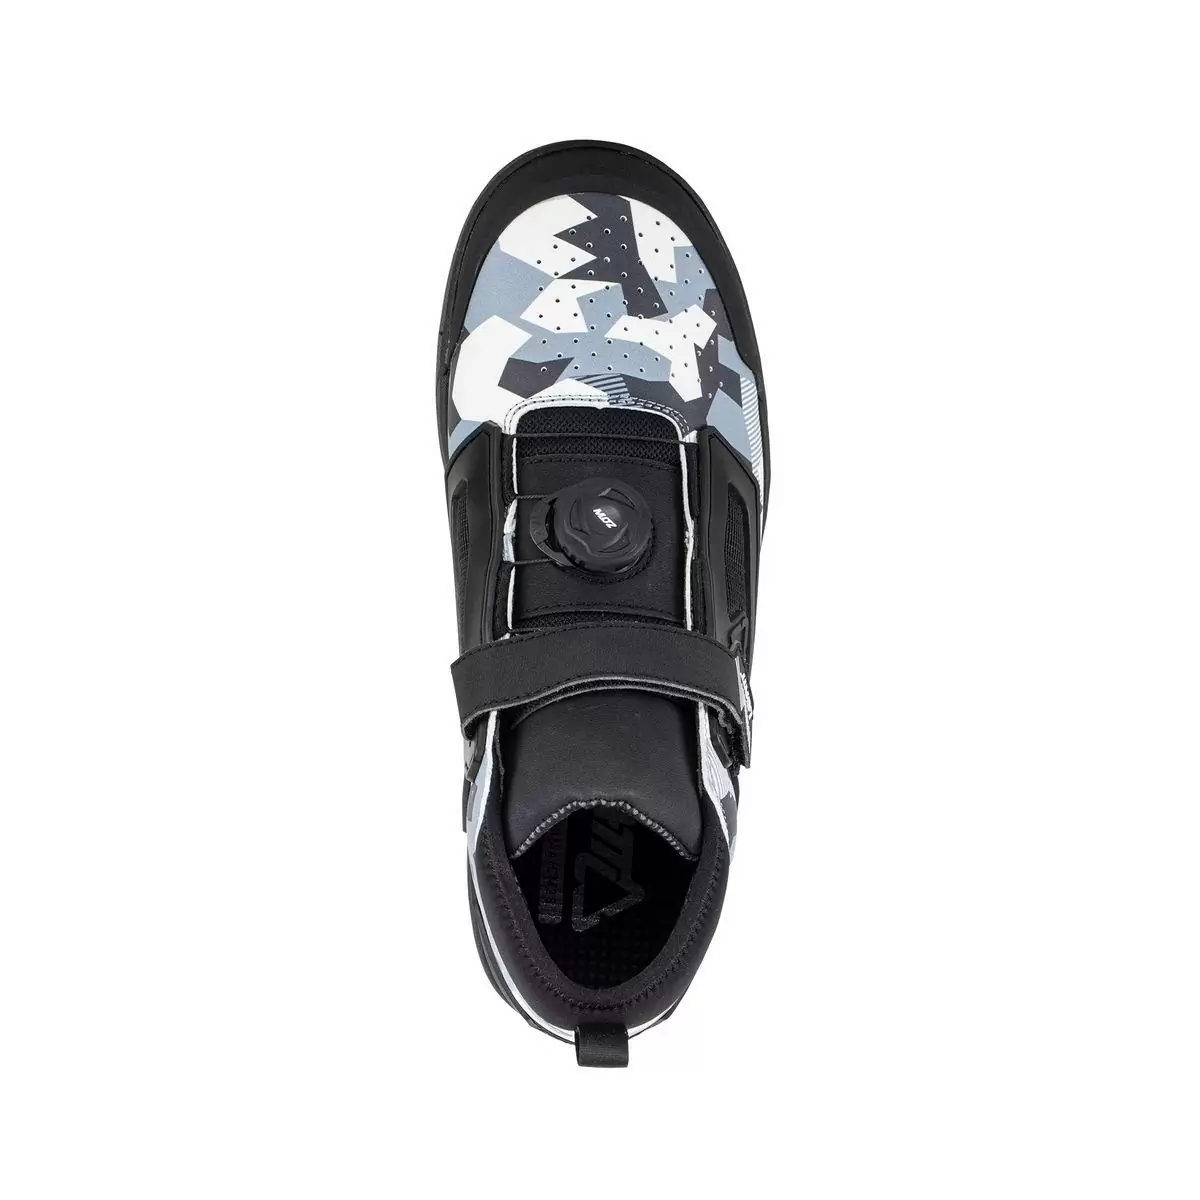 Chaussures VTT 3.0 Flat Pro Blanc/Noir Taille 42 #2